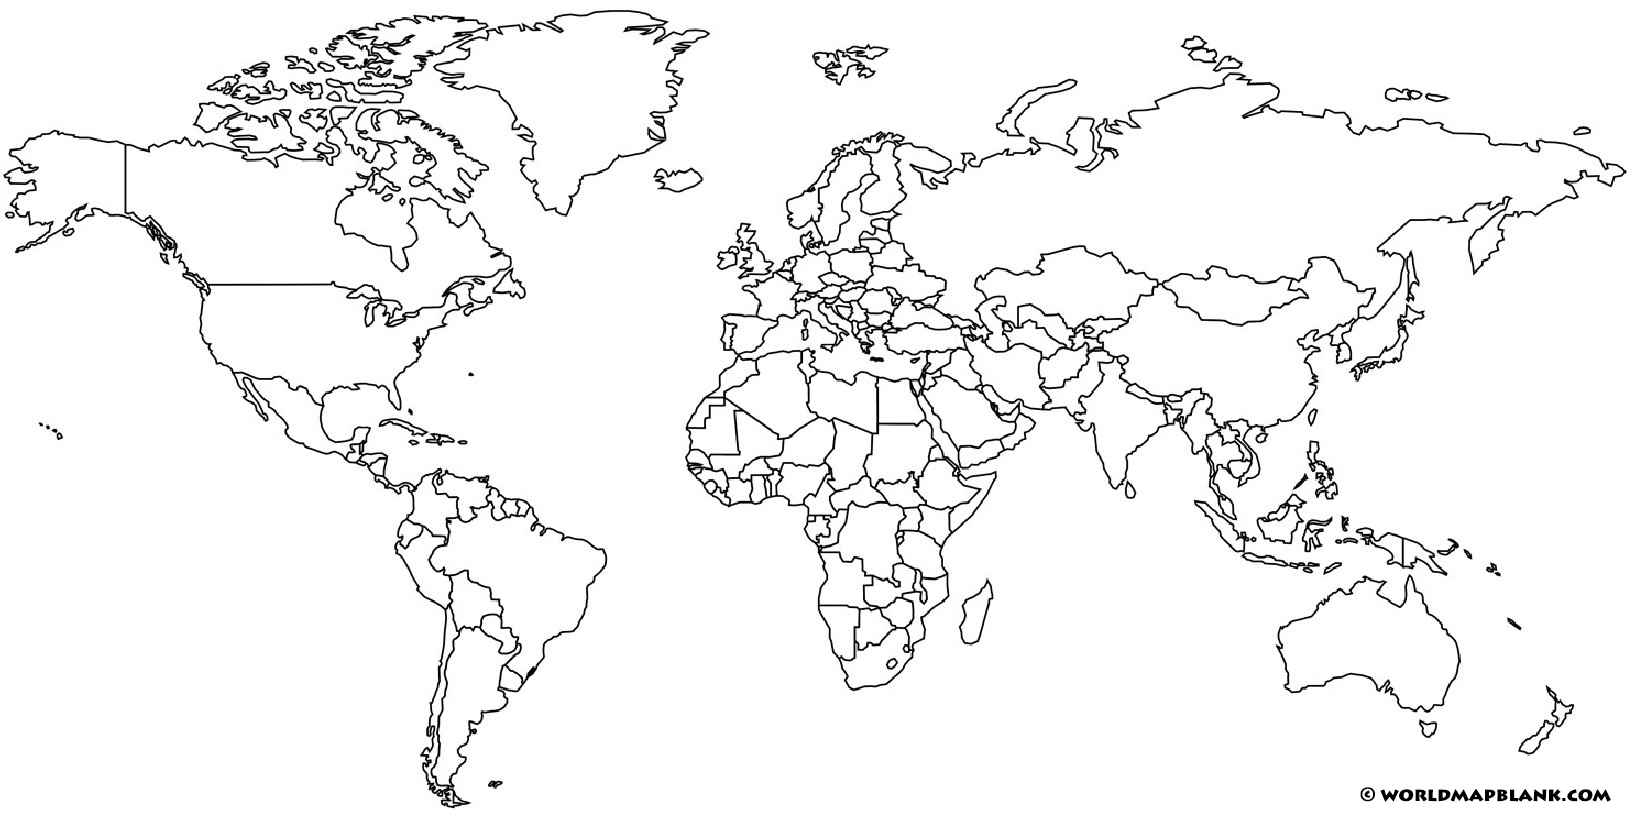 Stumme Weltkarte Ohne Beschriftung